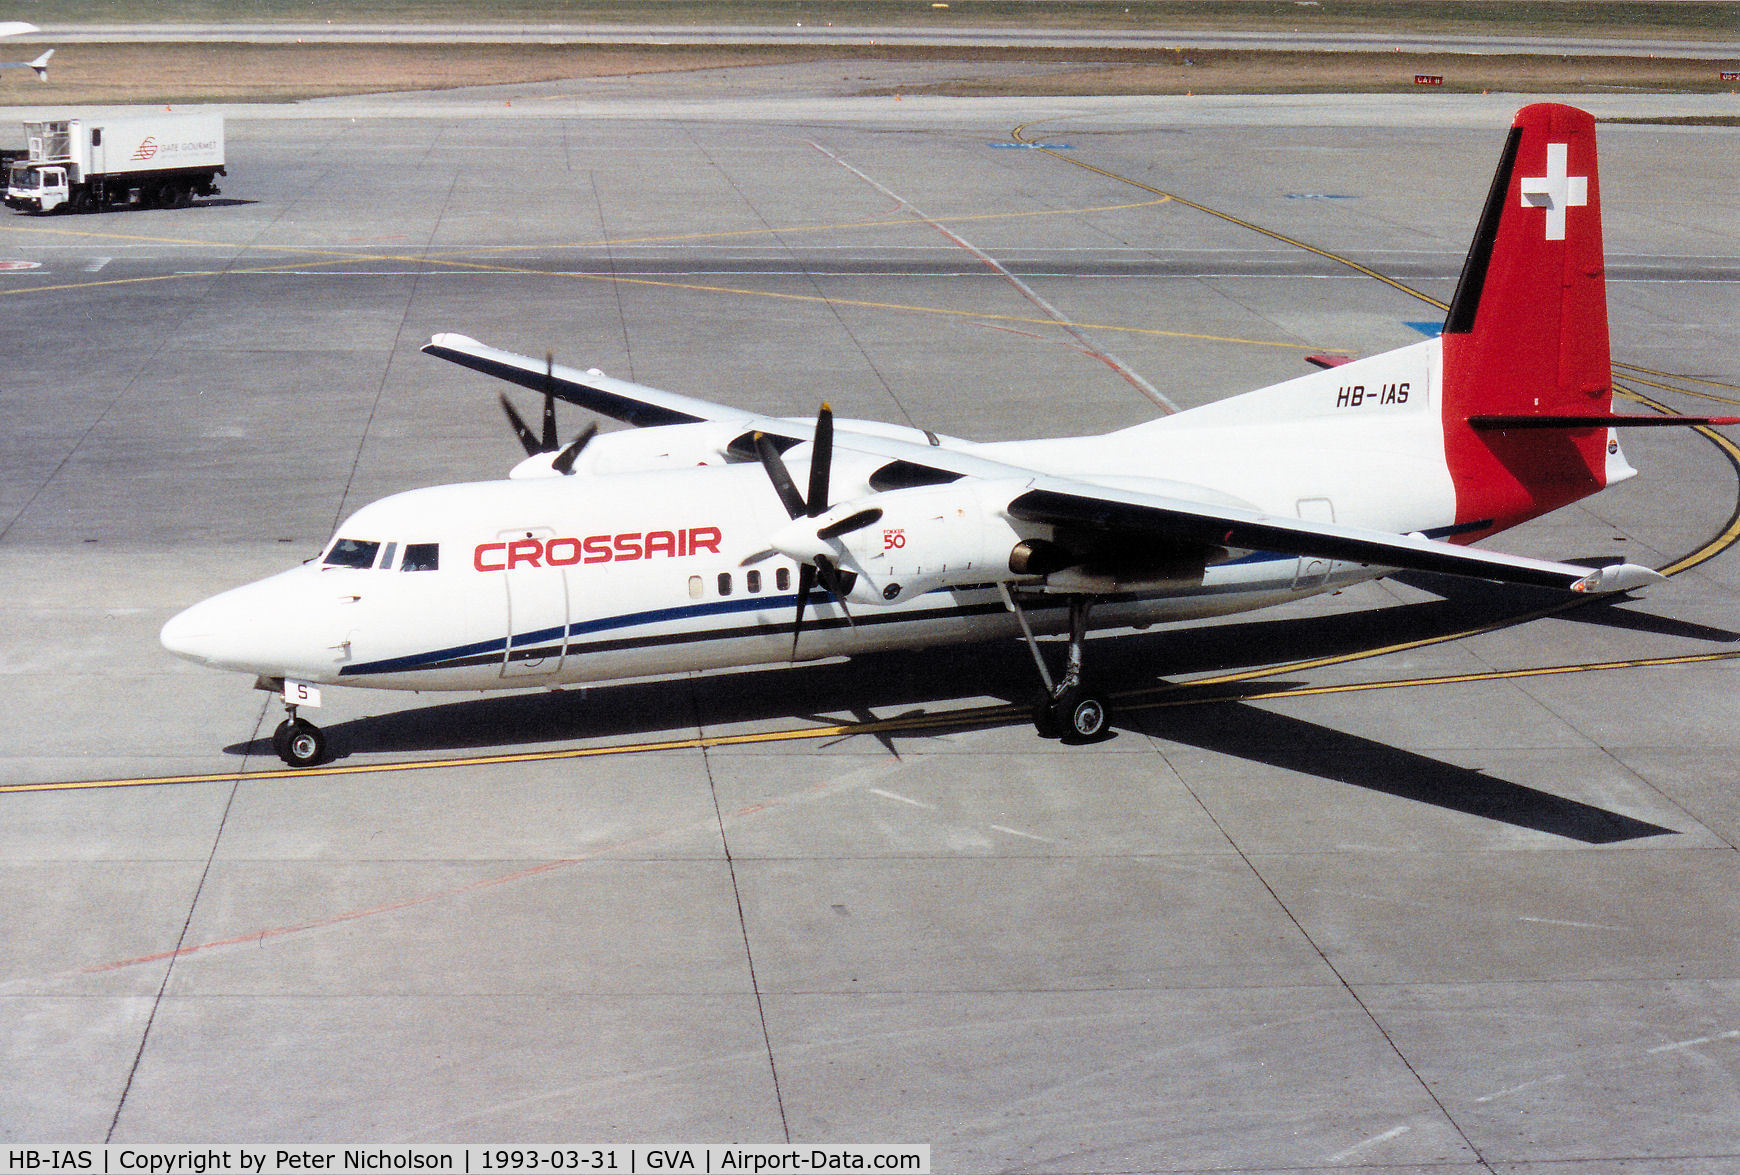 HB-IAS, 1991 Fokker 50 C/N 20220, Fokker 50 of Crossair at Geneva in March 1993.